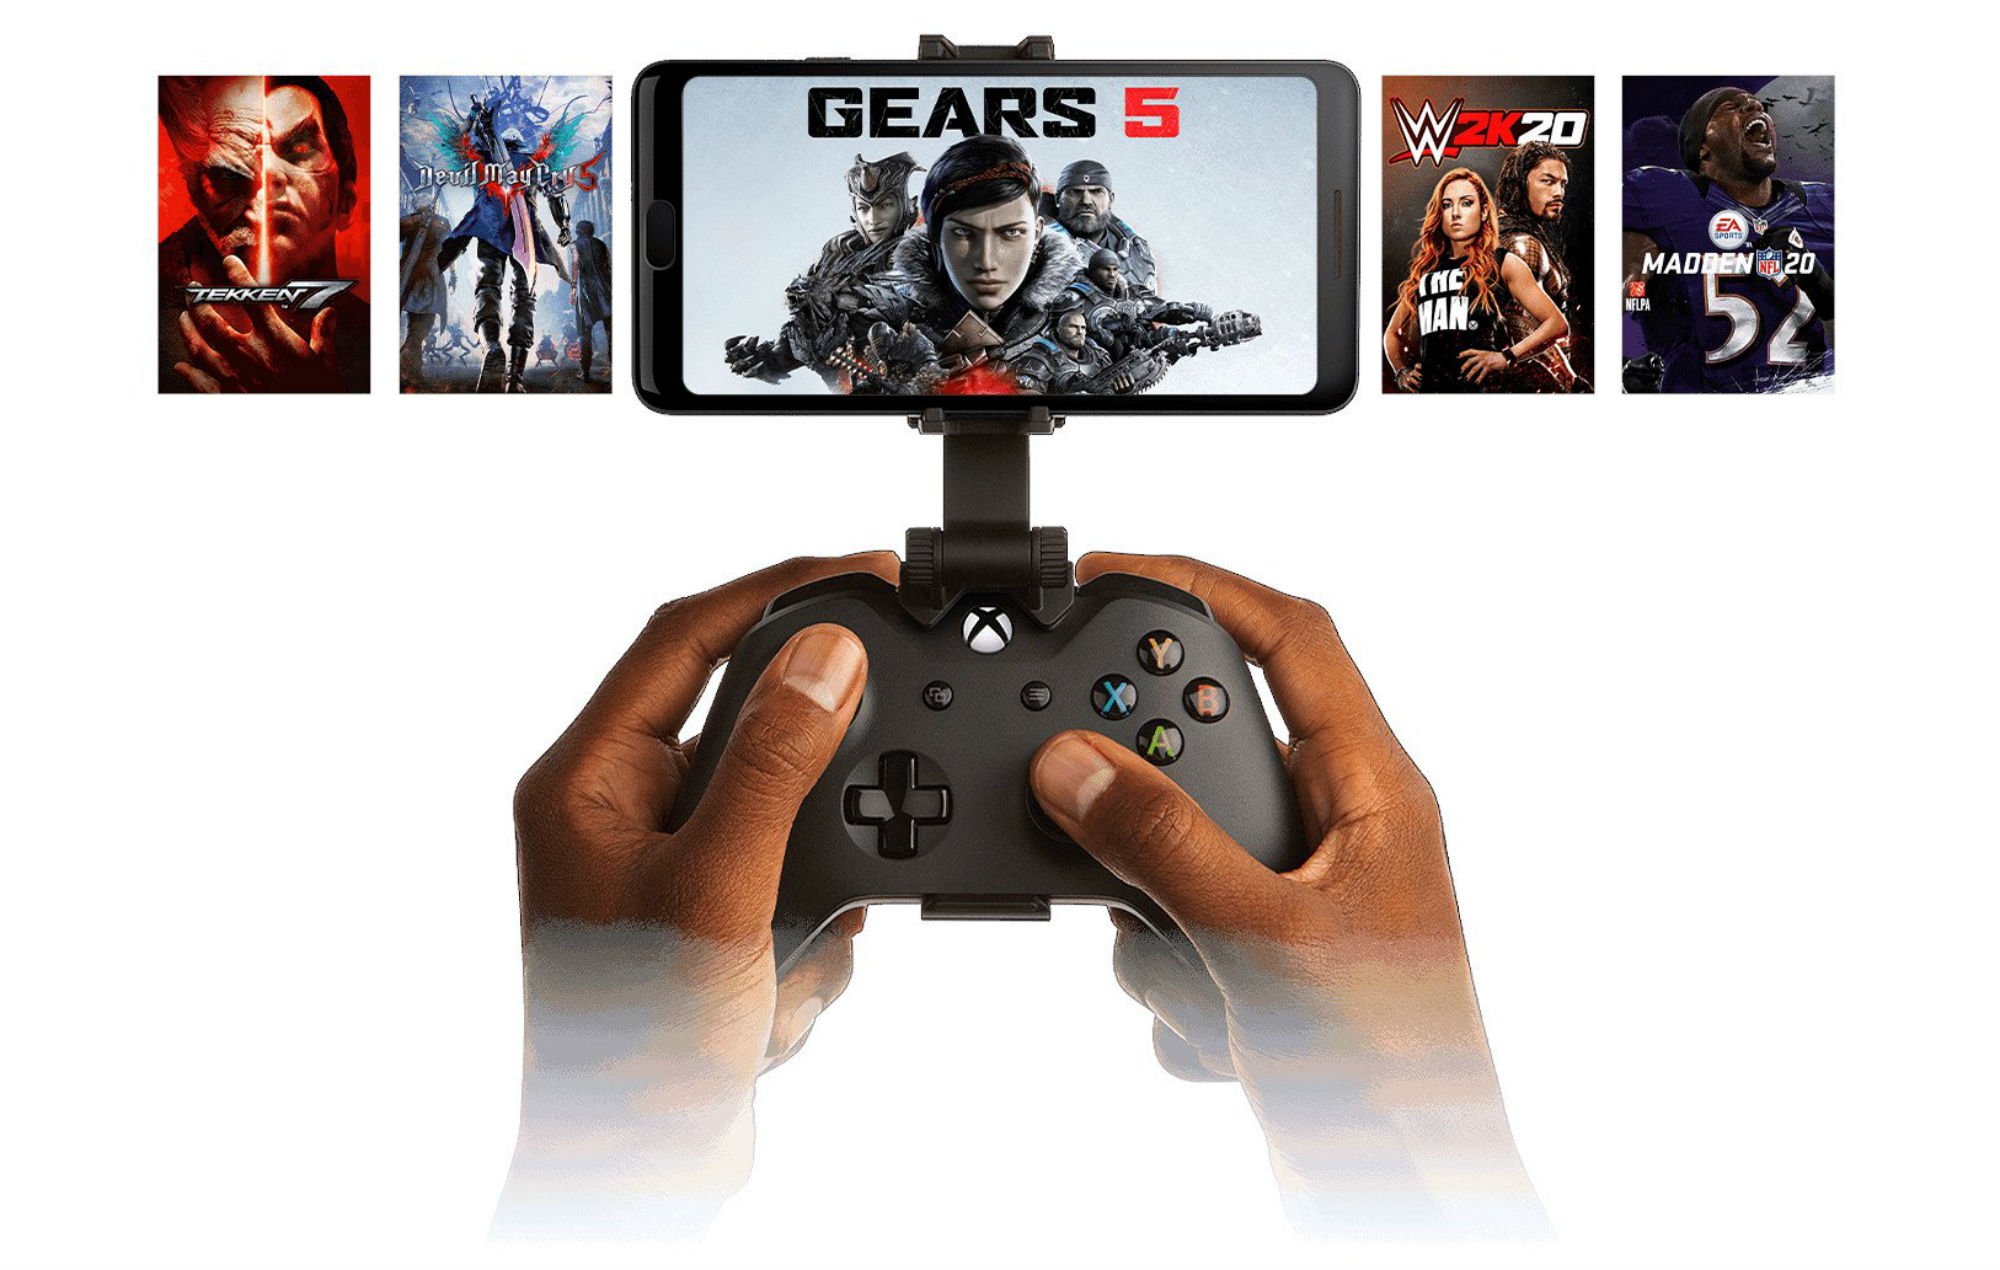 Com o Cloud Gaming, é possível jogar games pesados como Gears 5 no smartphone.